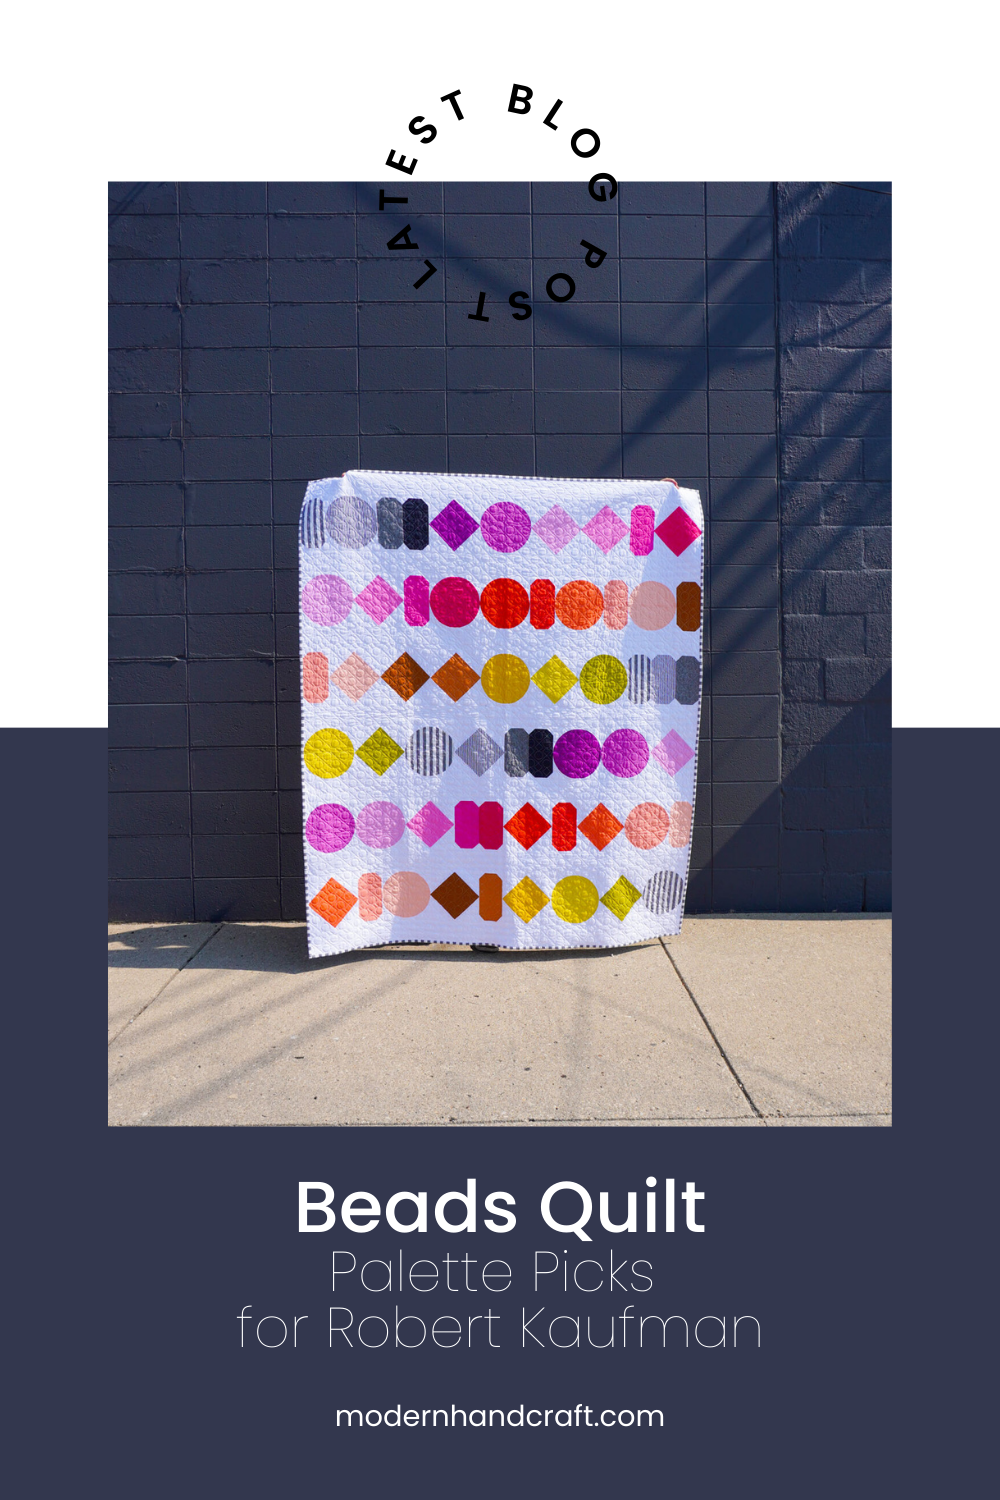 Beads Quilt - Modern Handcraft Palette Picks for Robert Kaufman, Modernhandcraft.com